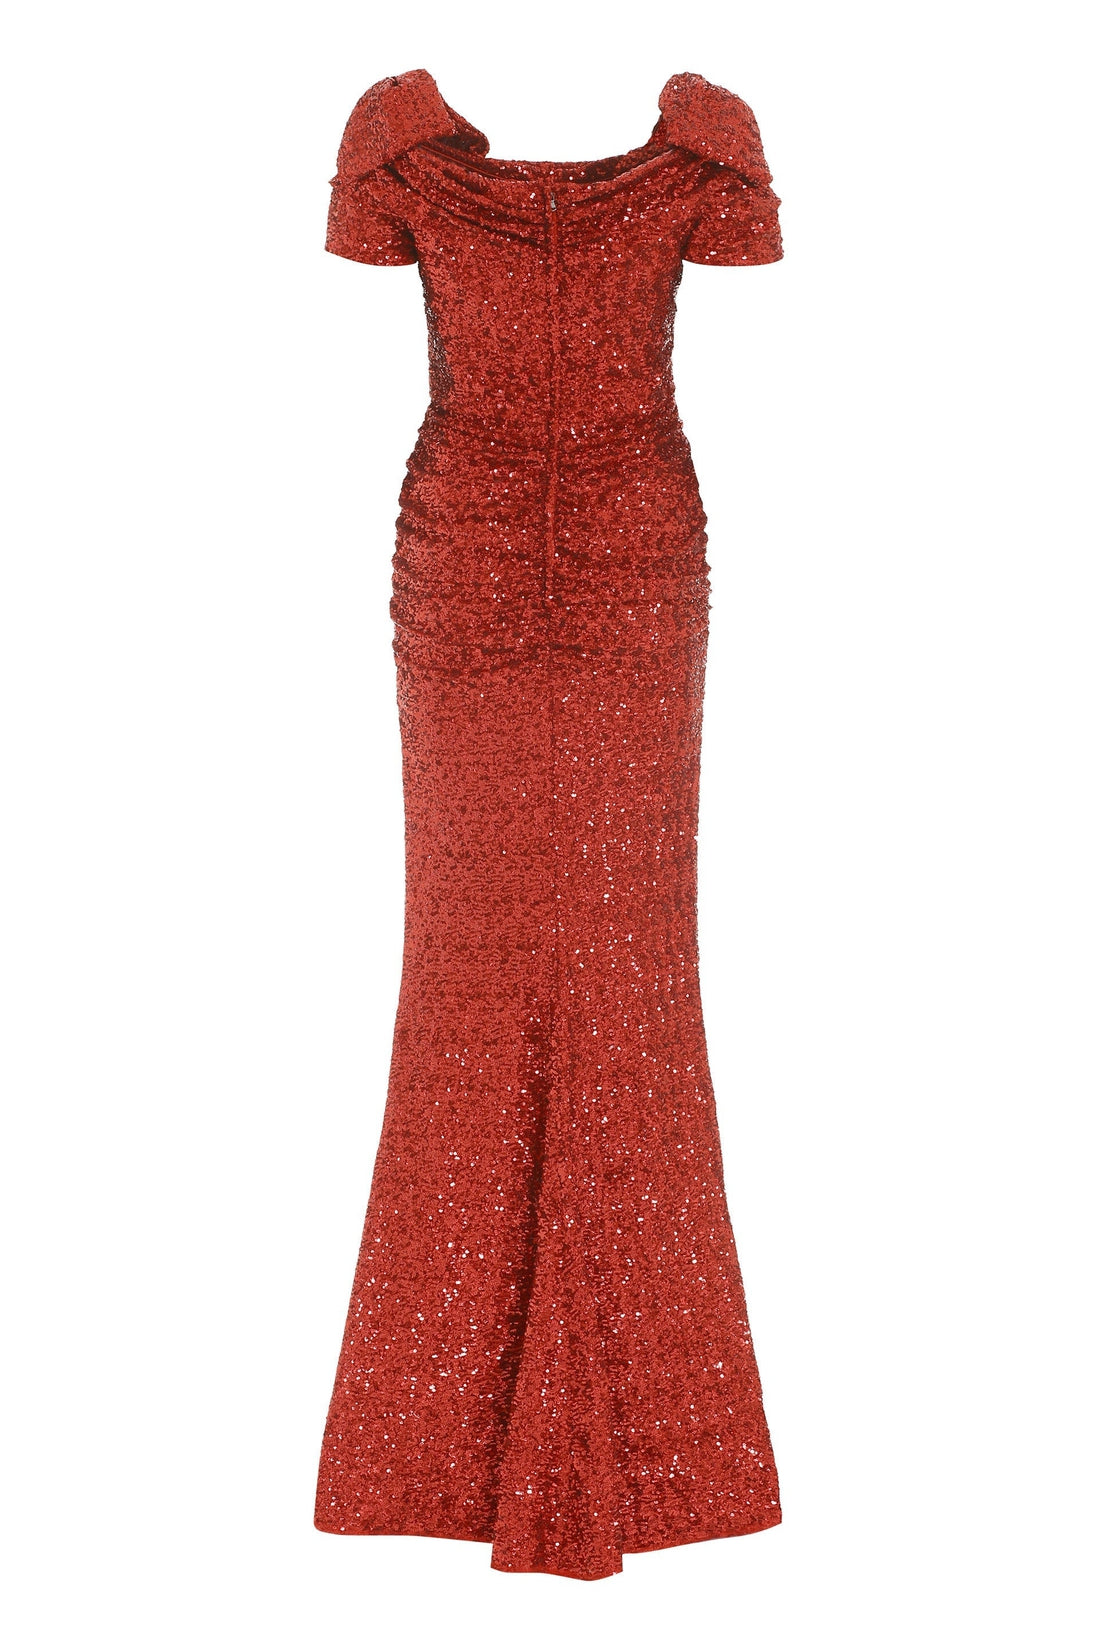 Dolce & Gabbana-OUTLET-SALE-Sequin long dress-ARCHIVIST